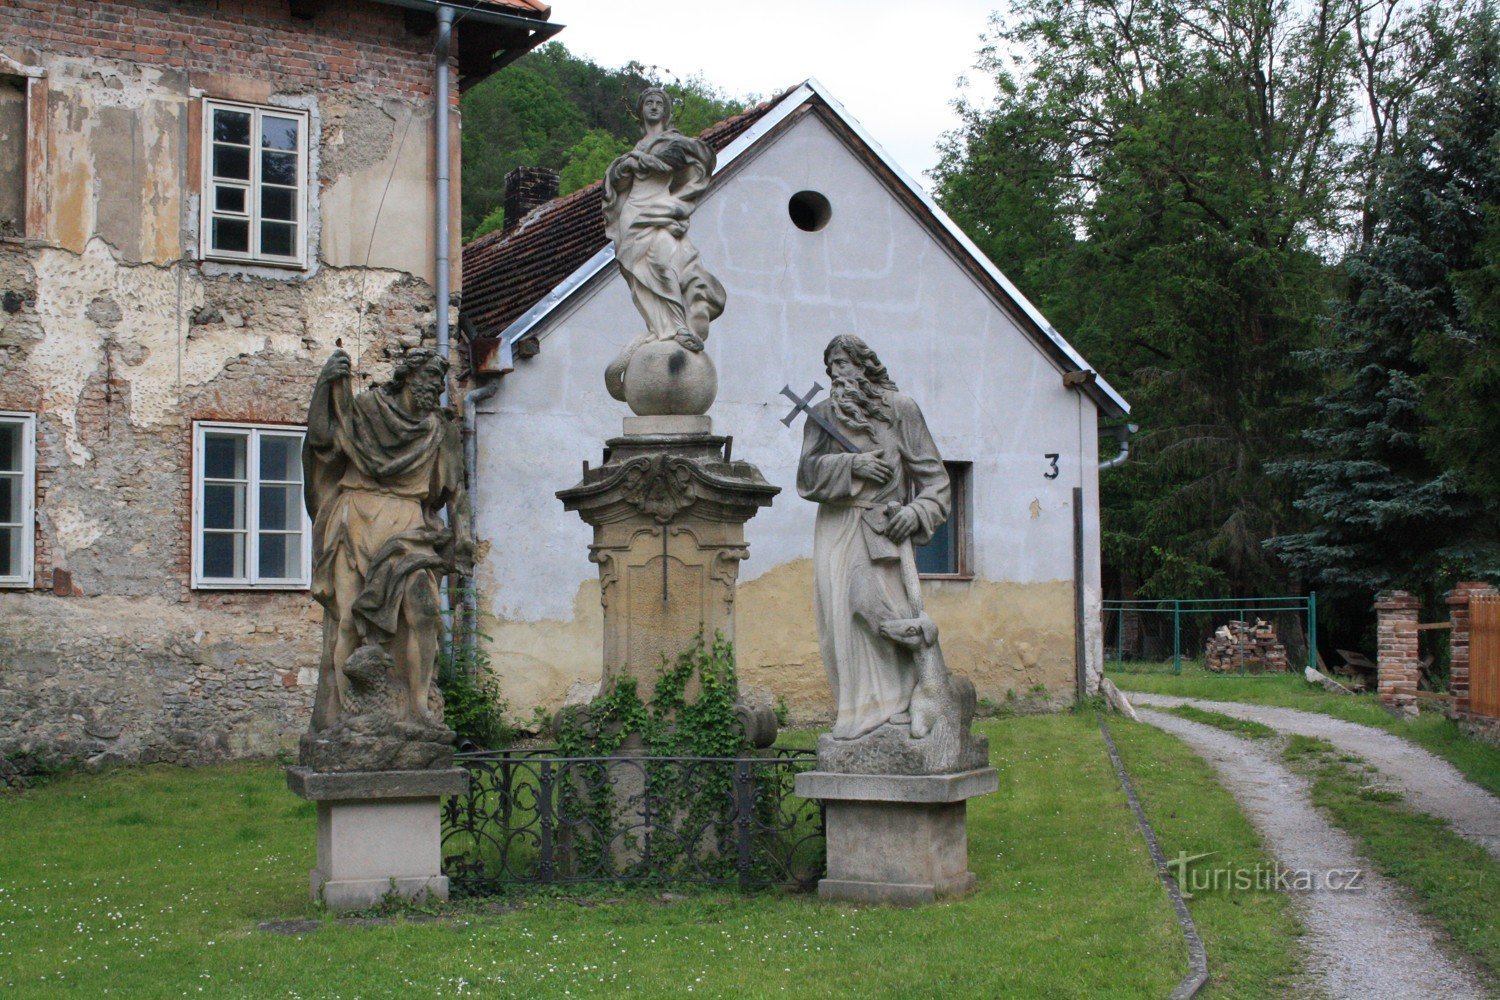 Ο Άγιος Ιωάννης κάτω από τον Βράχο και το άγαλμα στο χωριό